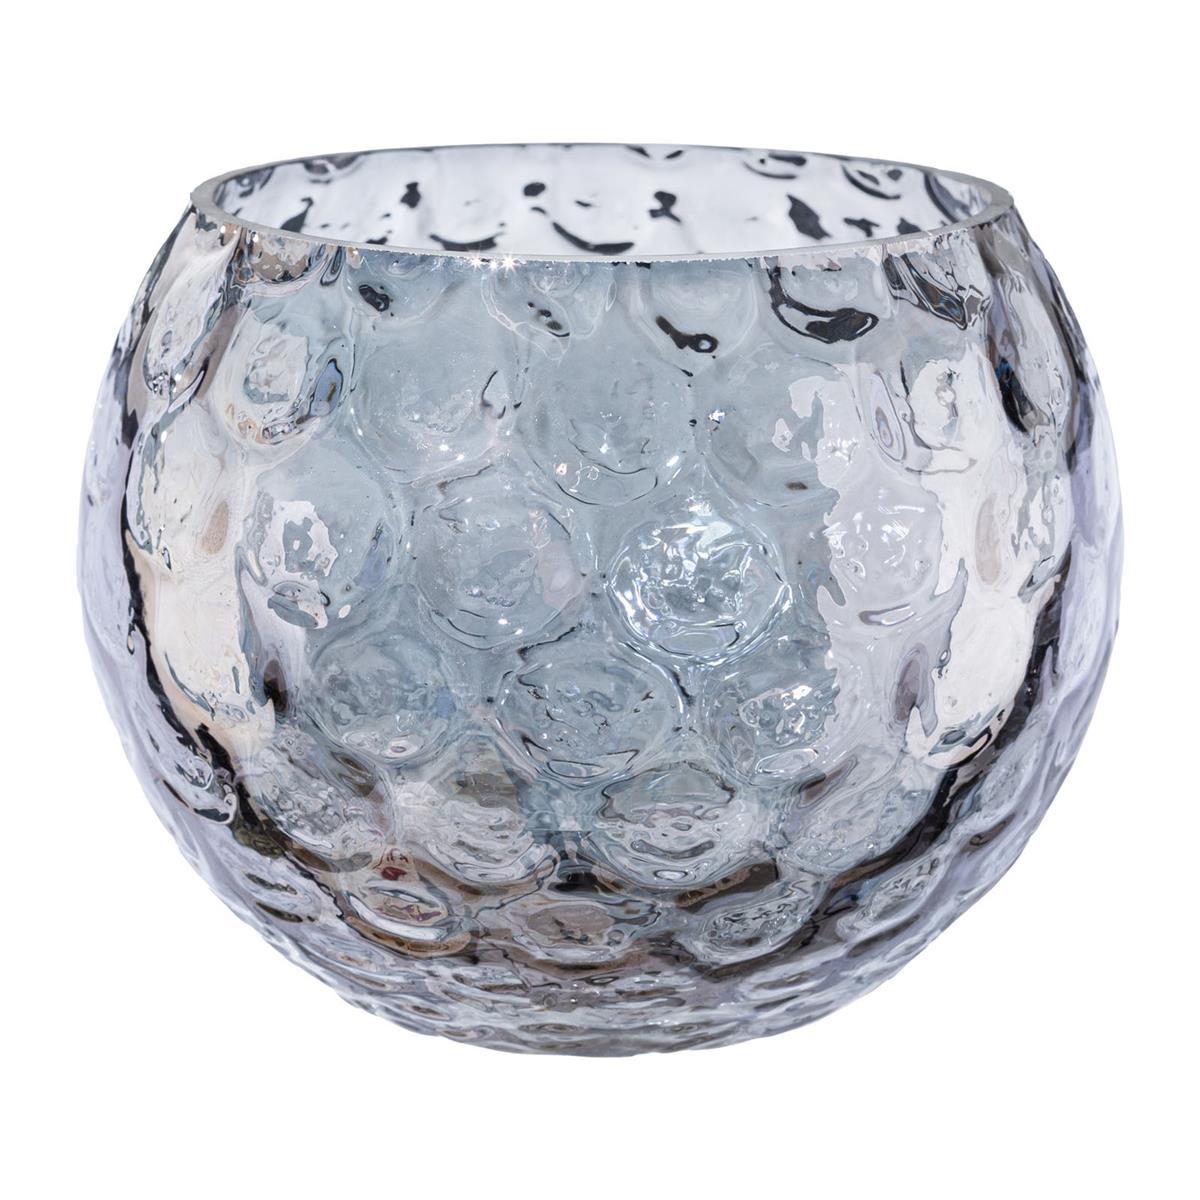 Windlicht Teelicht-Glas Vase 11 cm Rauch-Grau